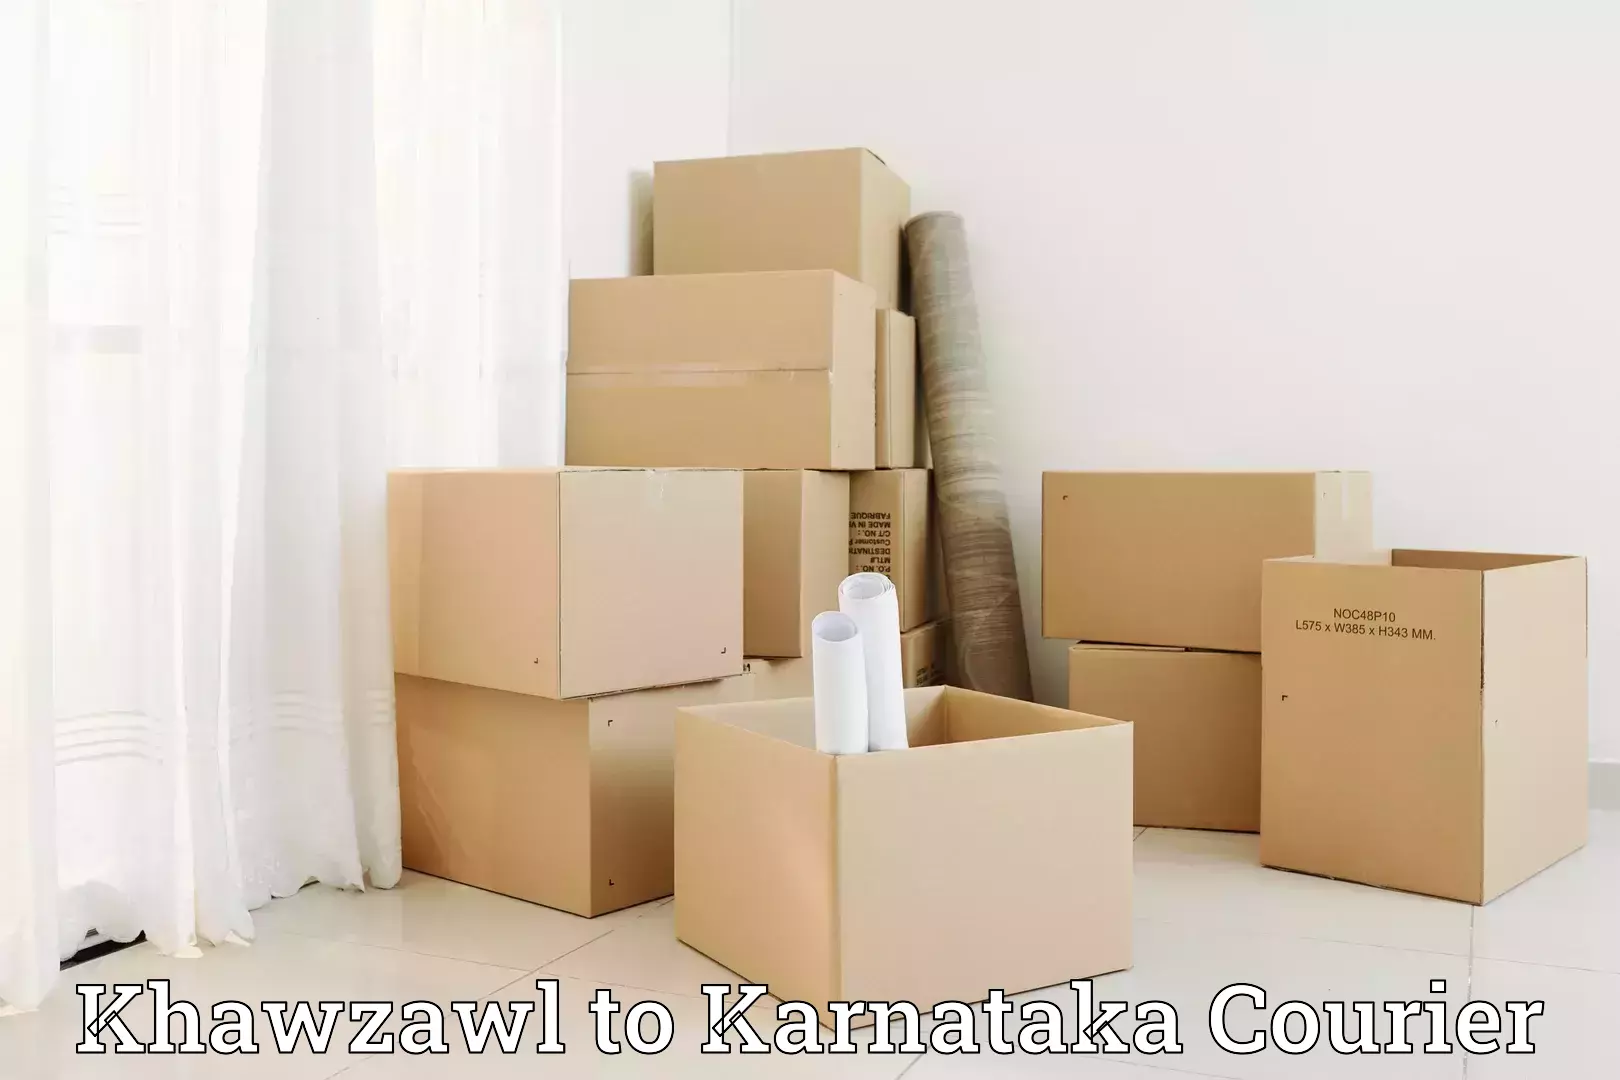 Furniture transport company Khawzawl to Bengaluru